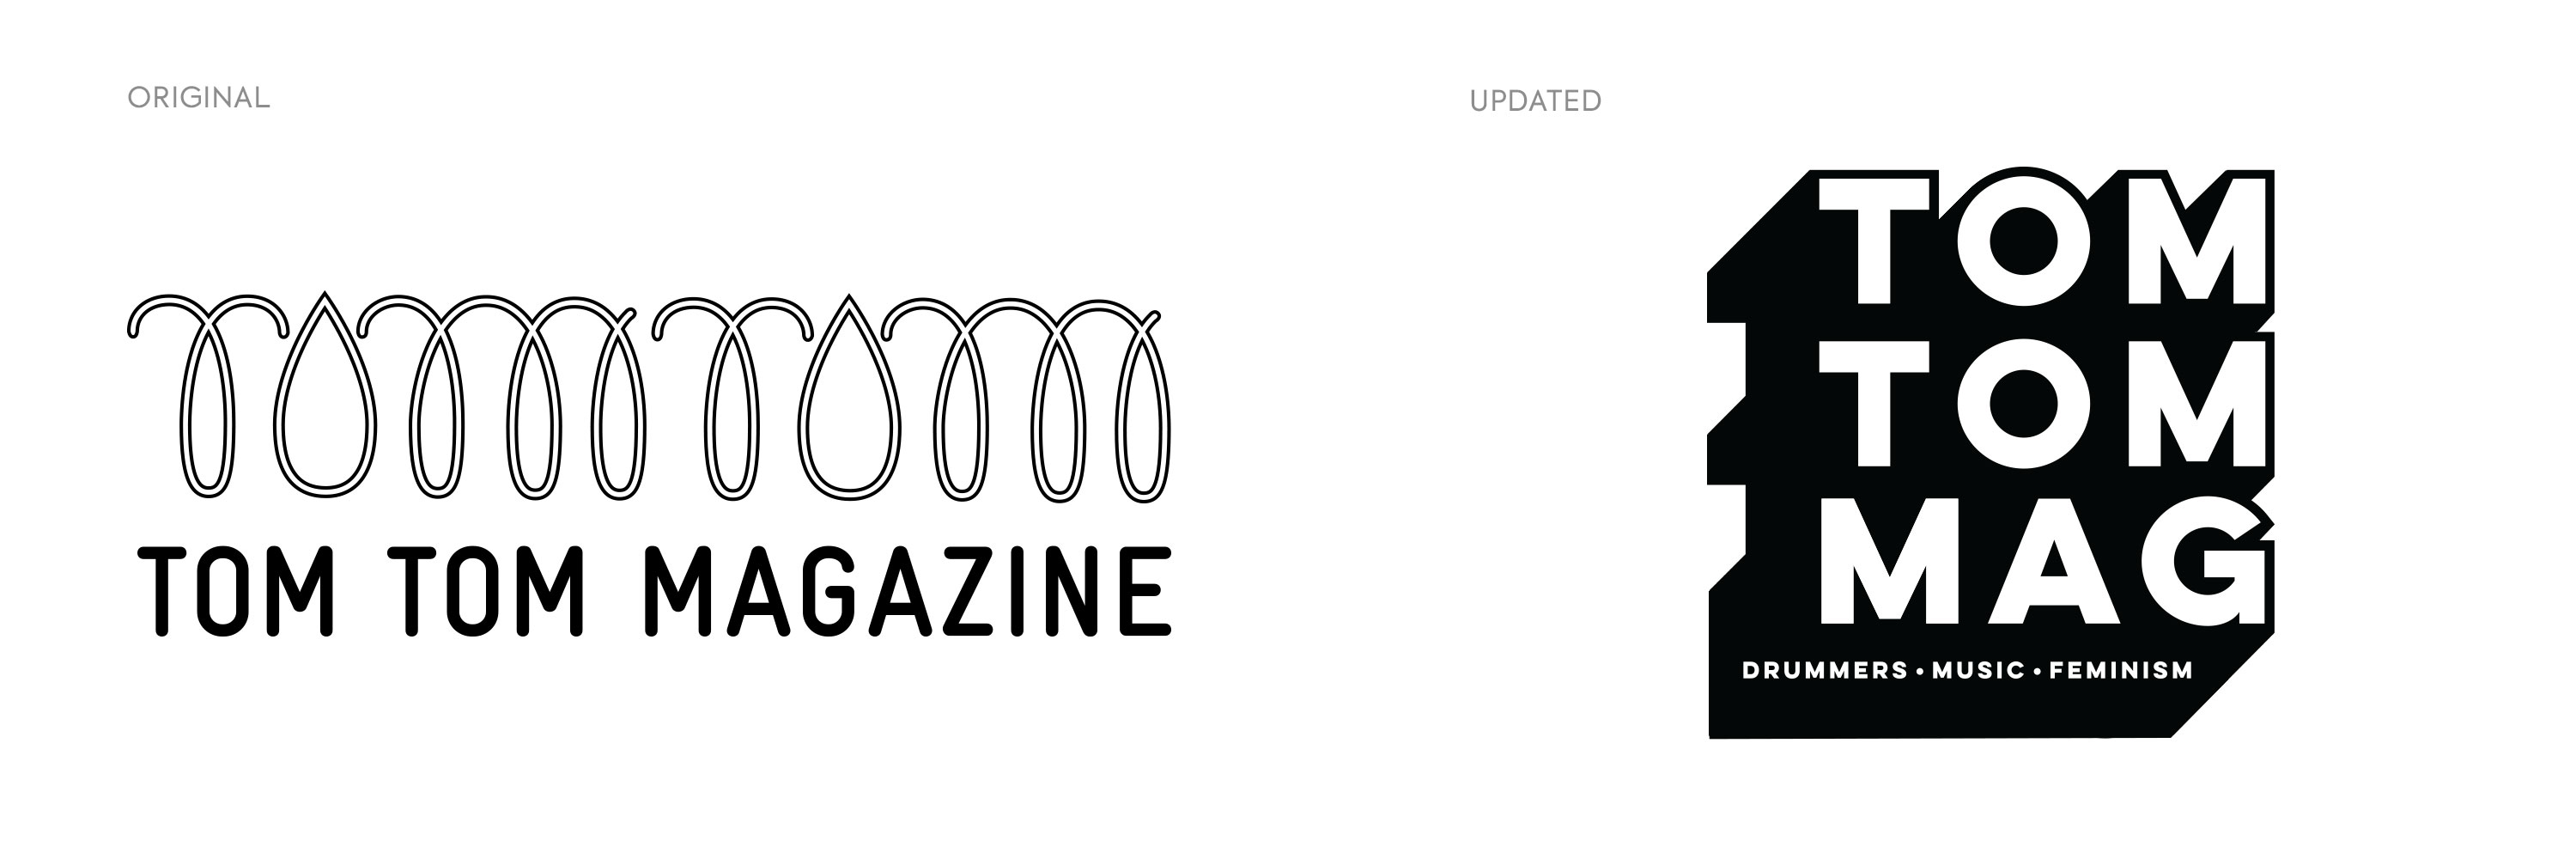 TomTom-Magazine-Logos-OldNew-01